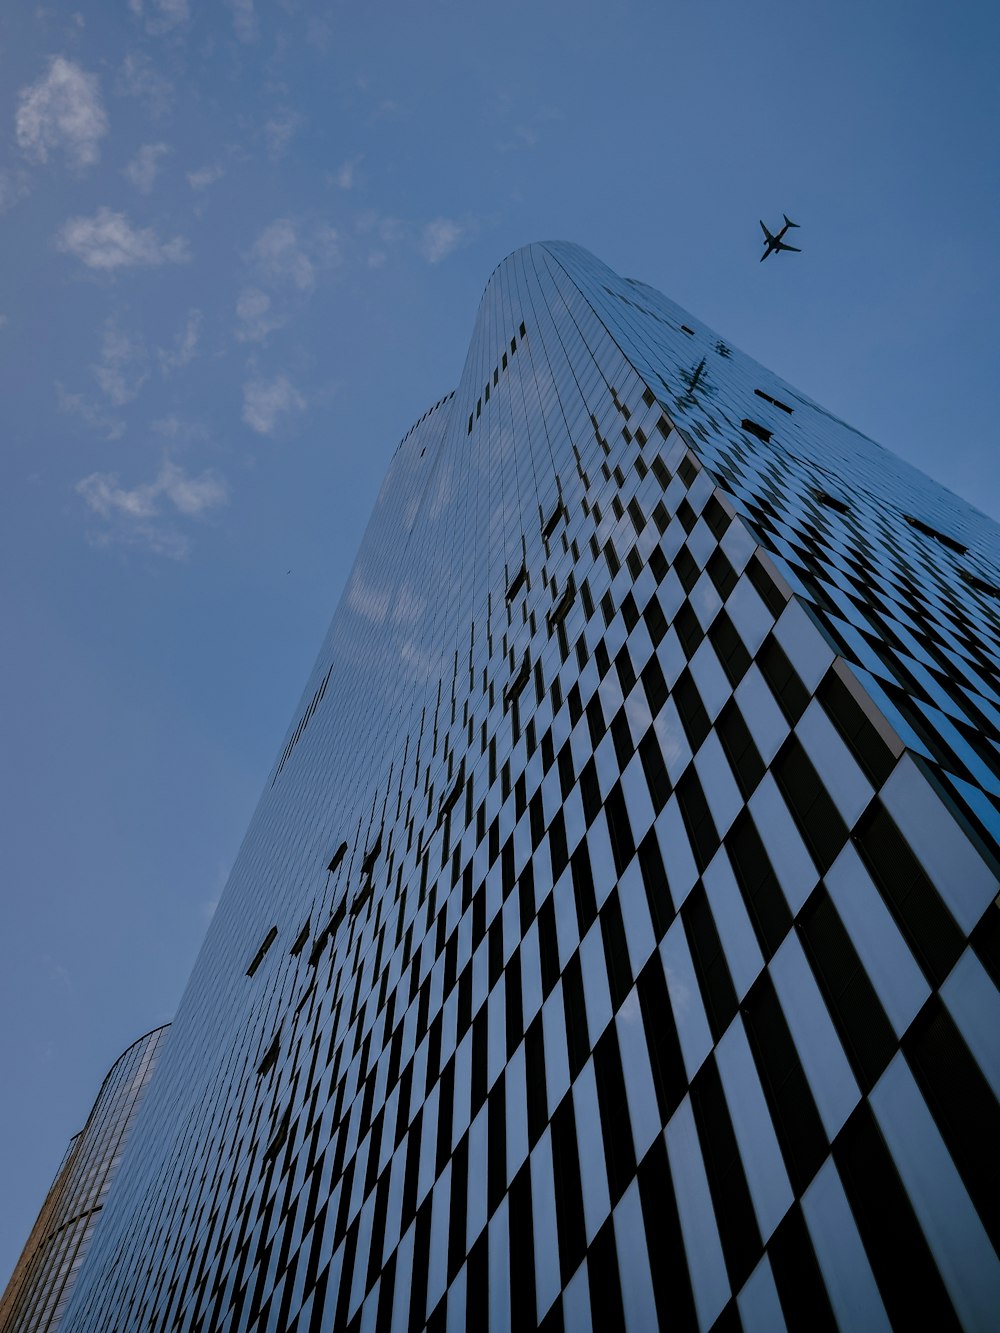 Un avión volando sobre un edificio alto con un diseño de tablero de ajedrez